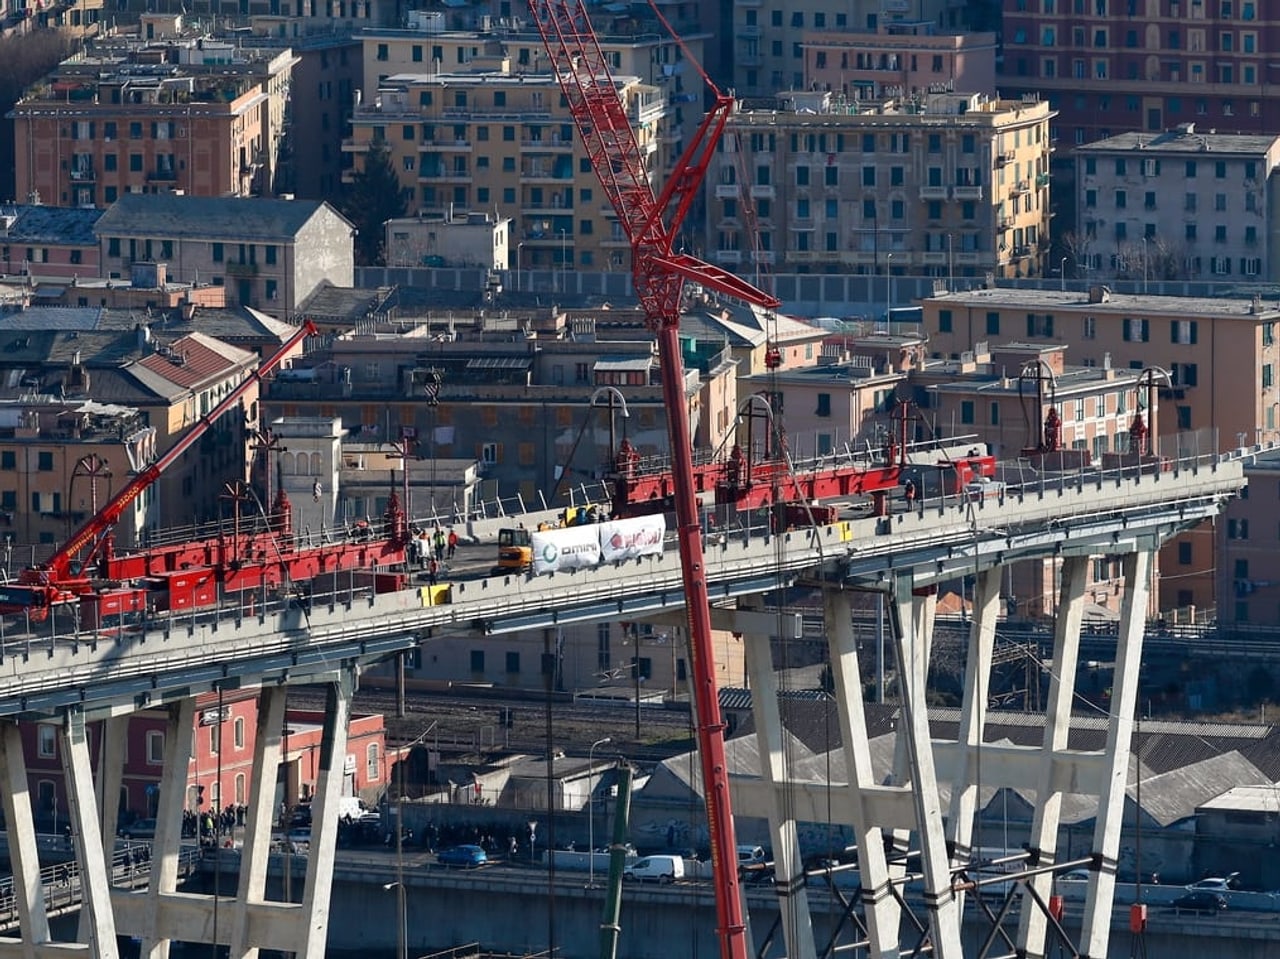 Morandi-Viadukt in Genua - Jetzt beginnt Abriss der ...